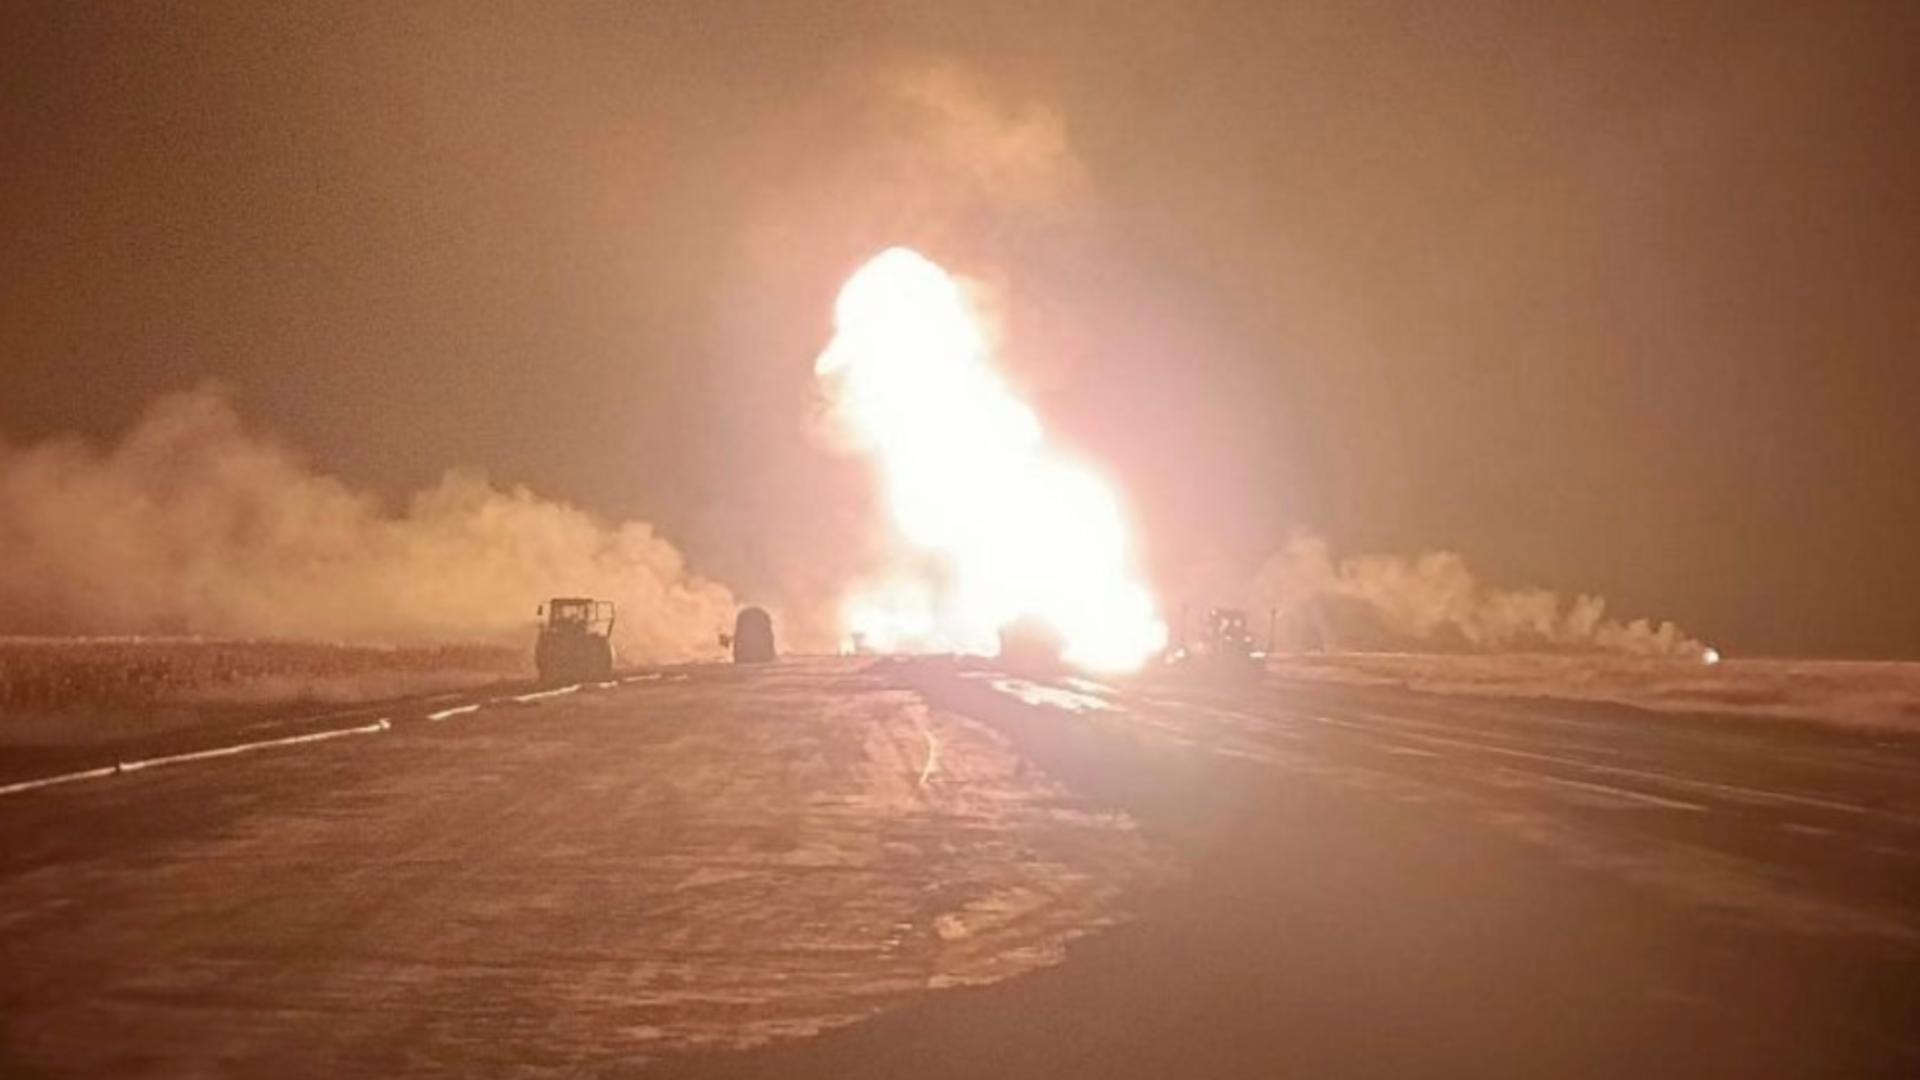 Explozide urmată de incendiu la magistrala de gaz de la Călimănești